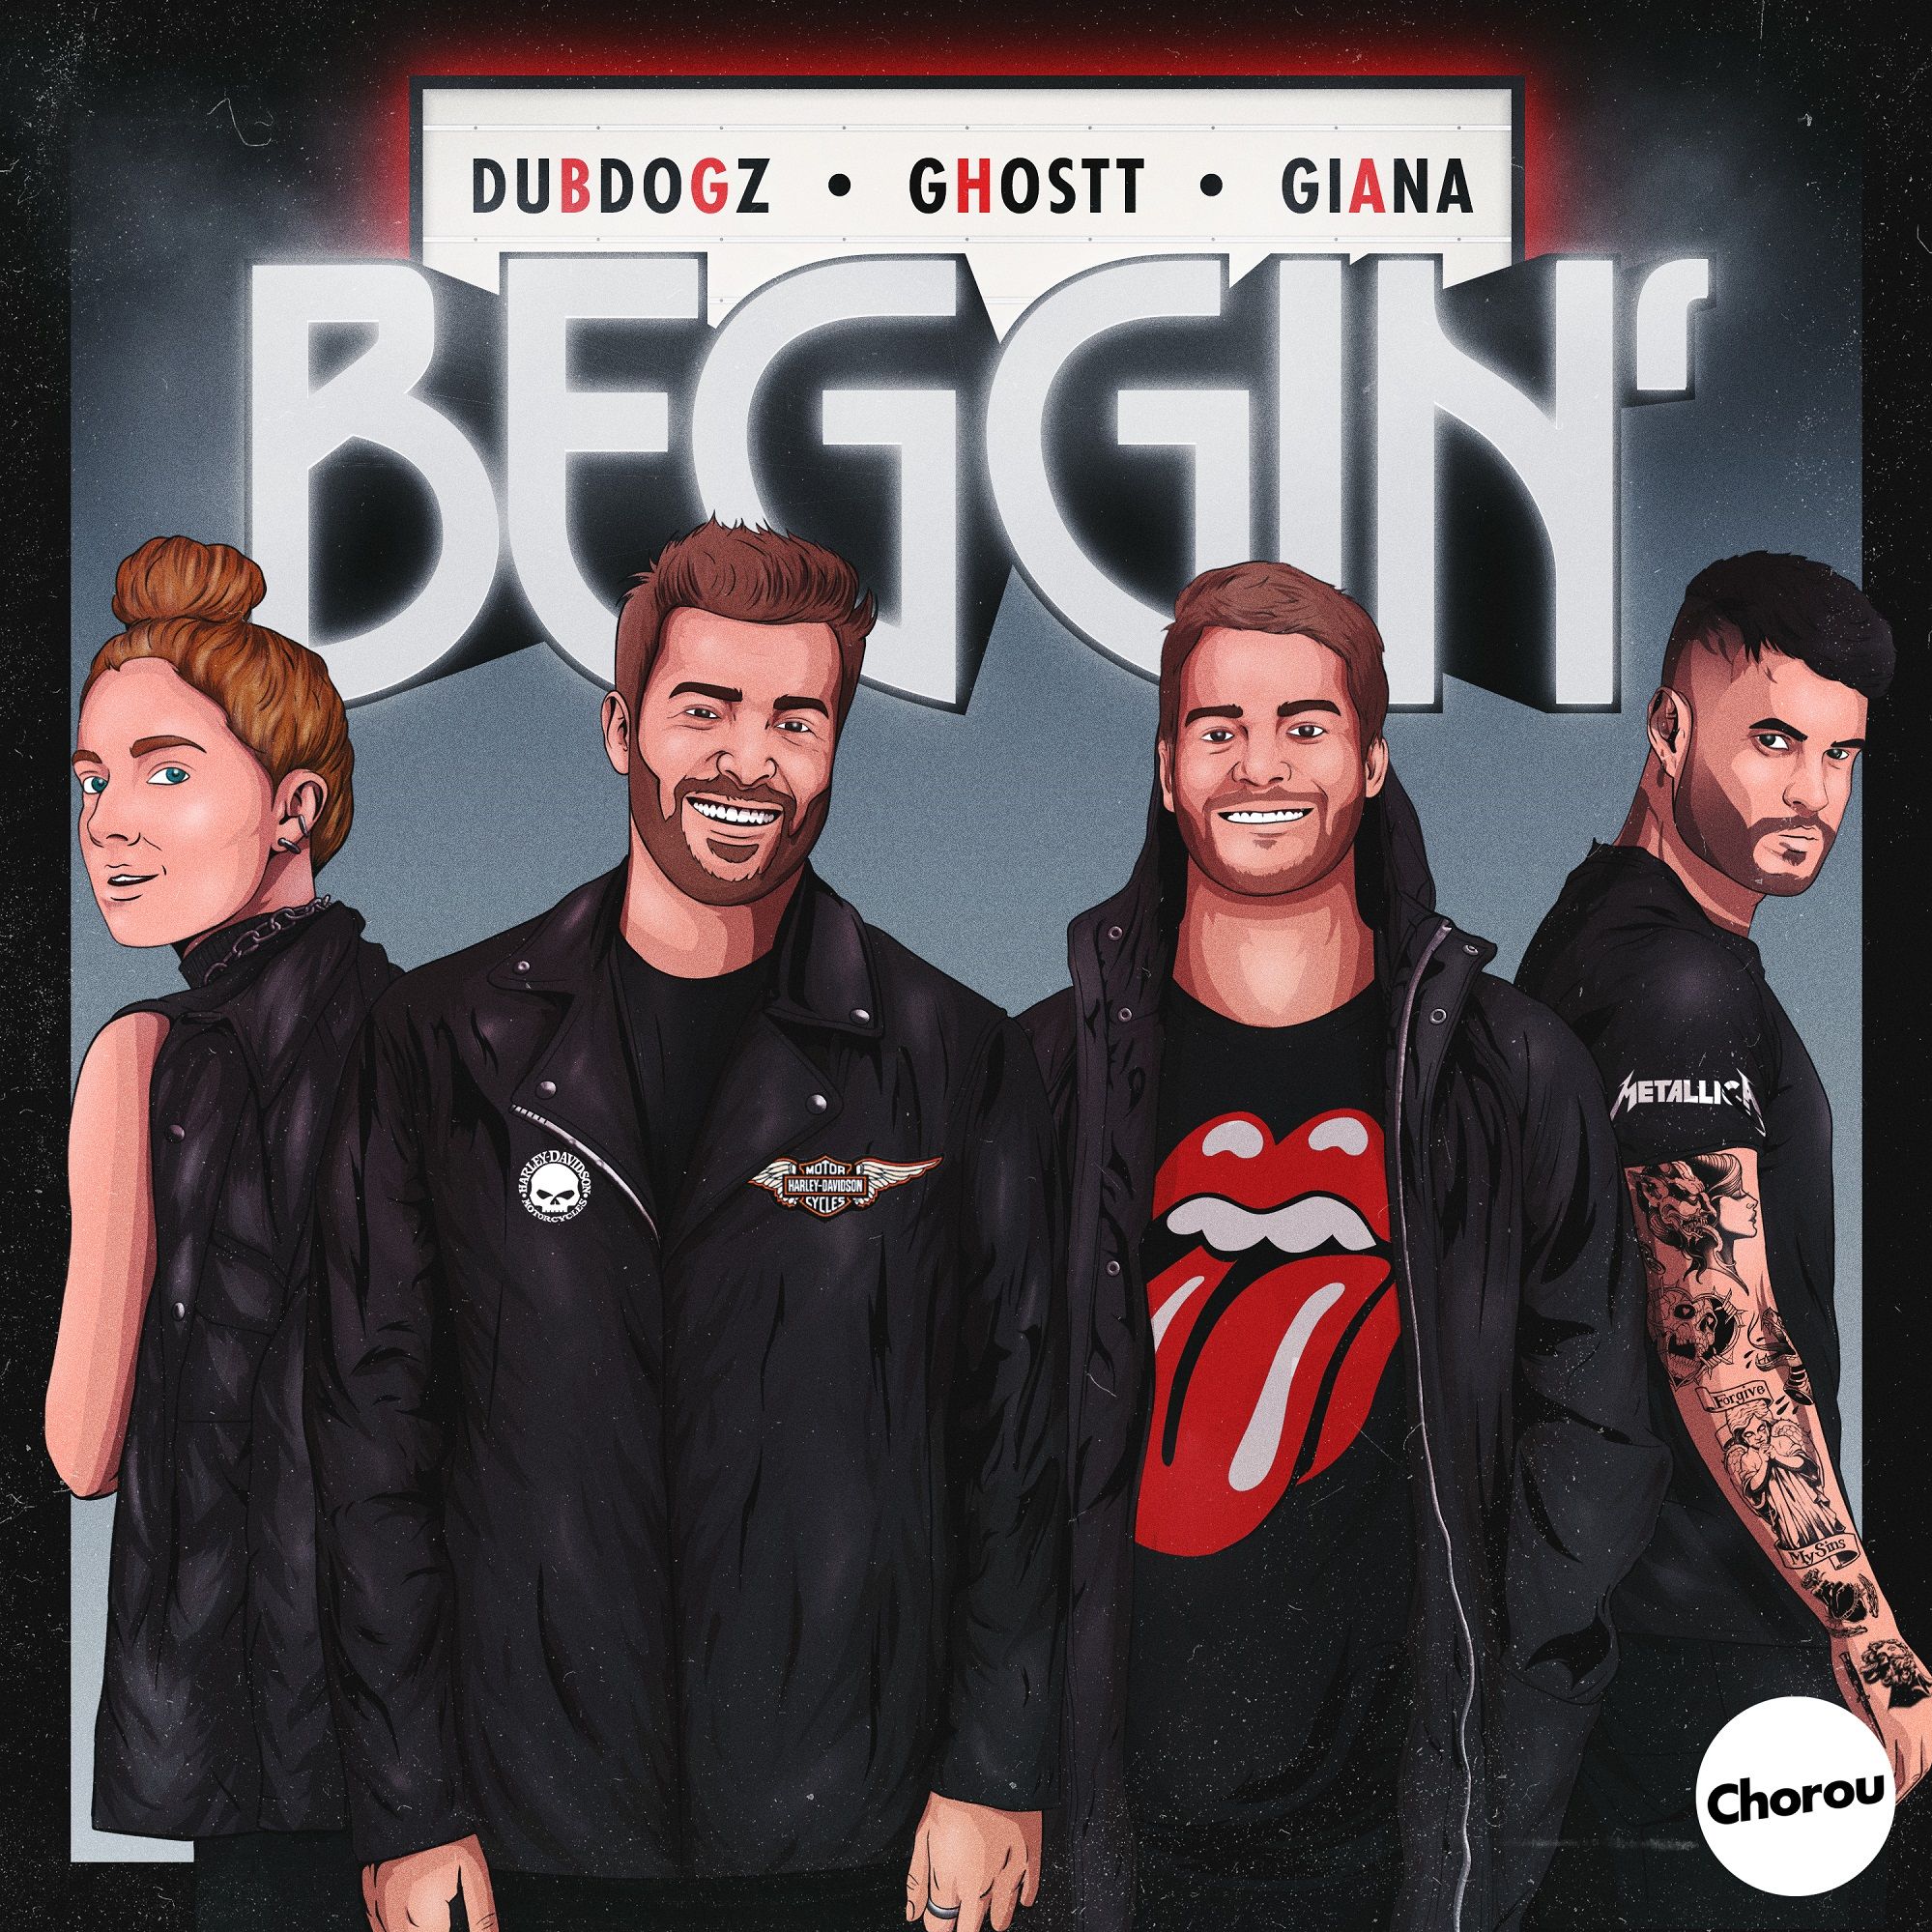 Letöltés Dubdogz, Ghostt - Beggin' (feat. Giana) [Chorou Records]